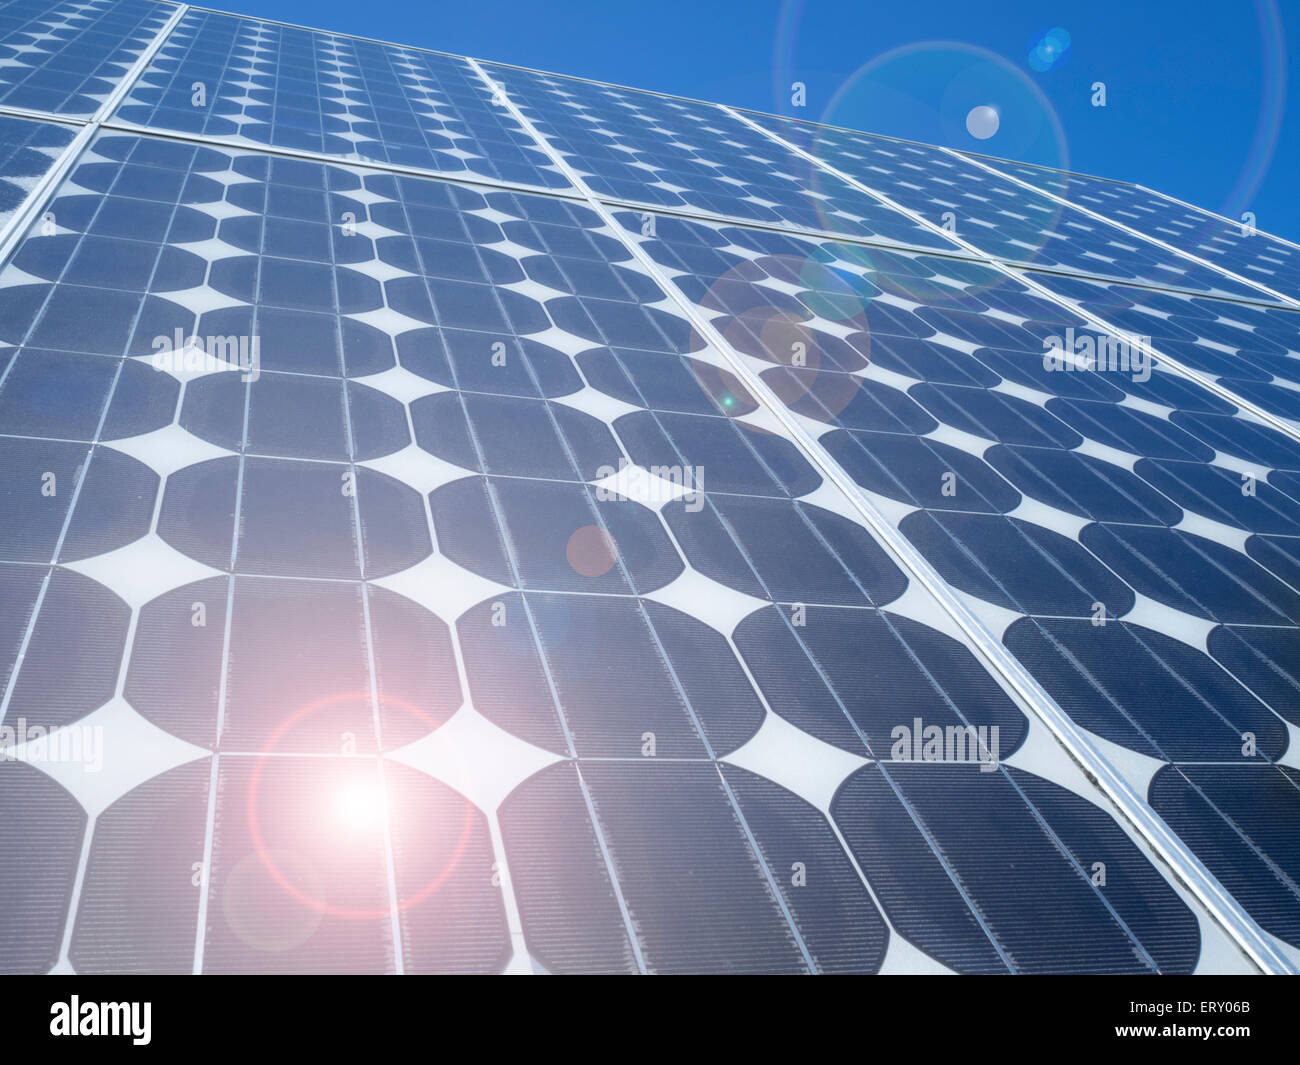 Blauen Solarzellen photovoltaische Zellen array Nahaufnahme abstrakt hintergrund Erneuerbare Energien Eco Clean freundlich Stromquelle globale Erwärmung Konzept Stockfoto